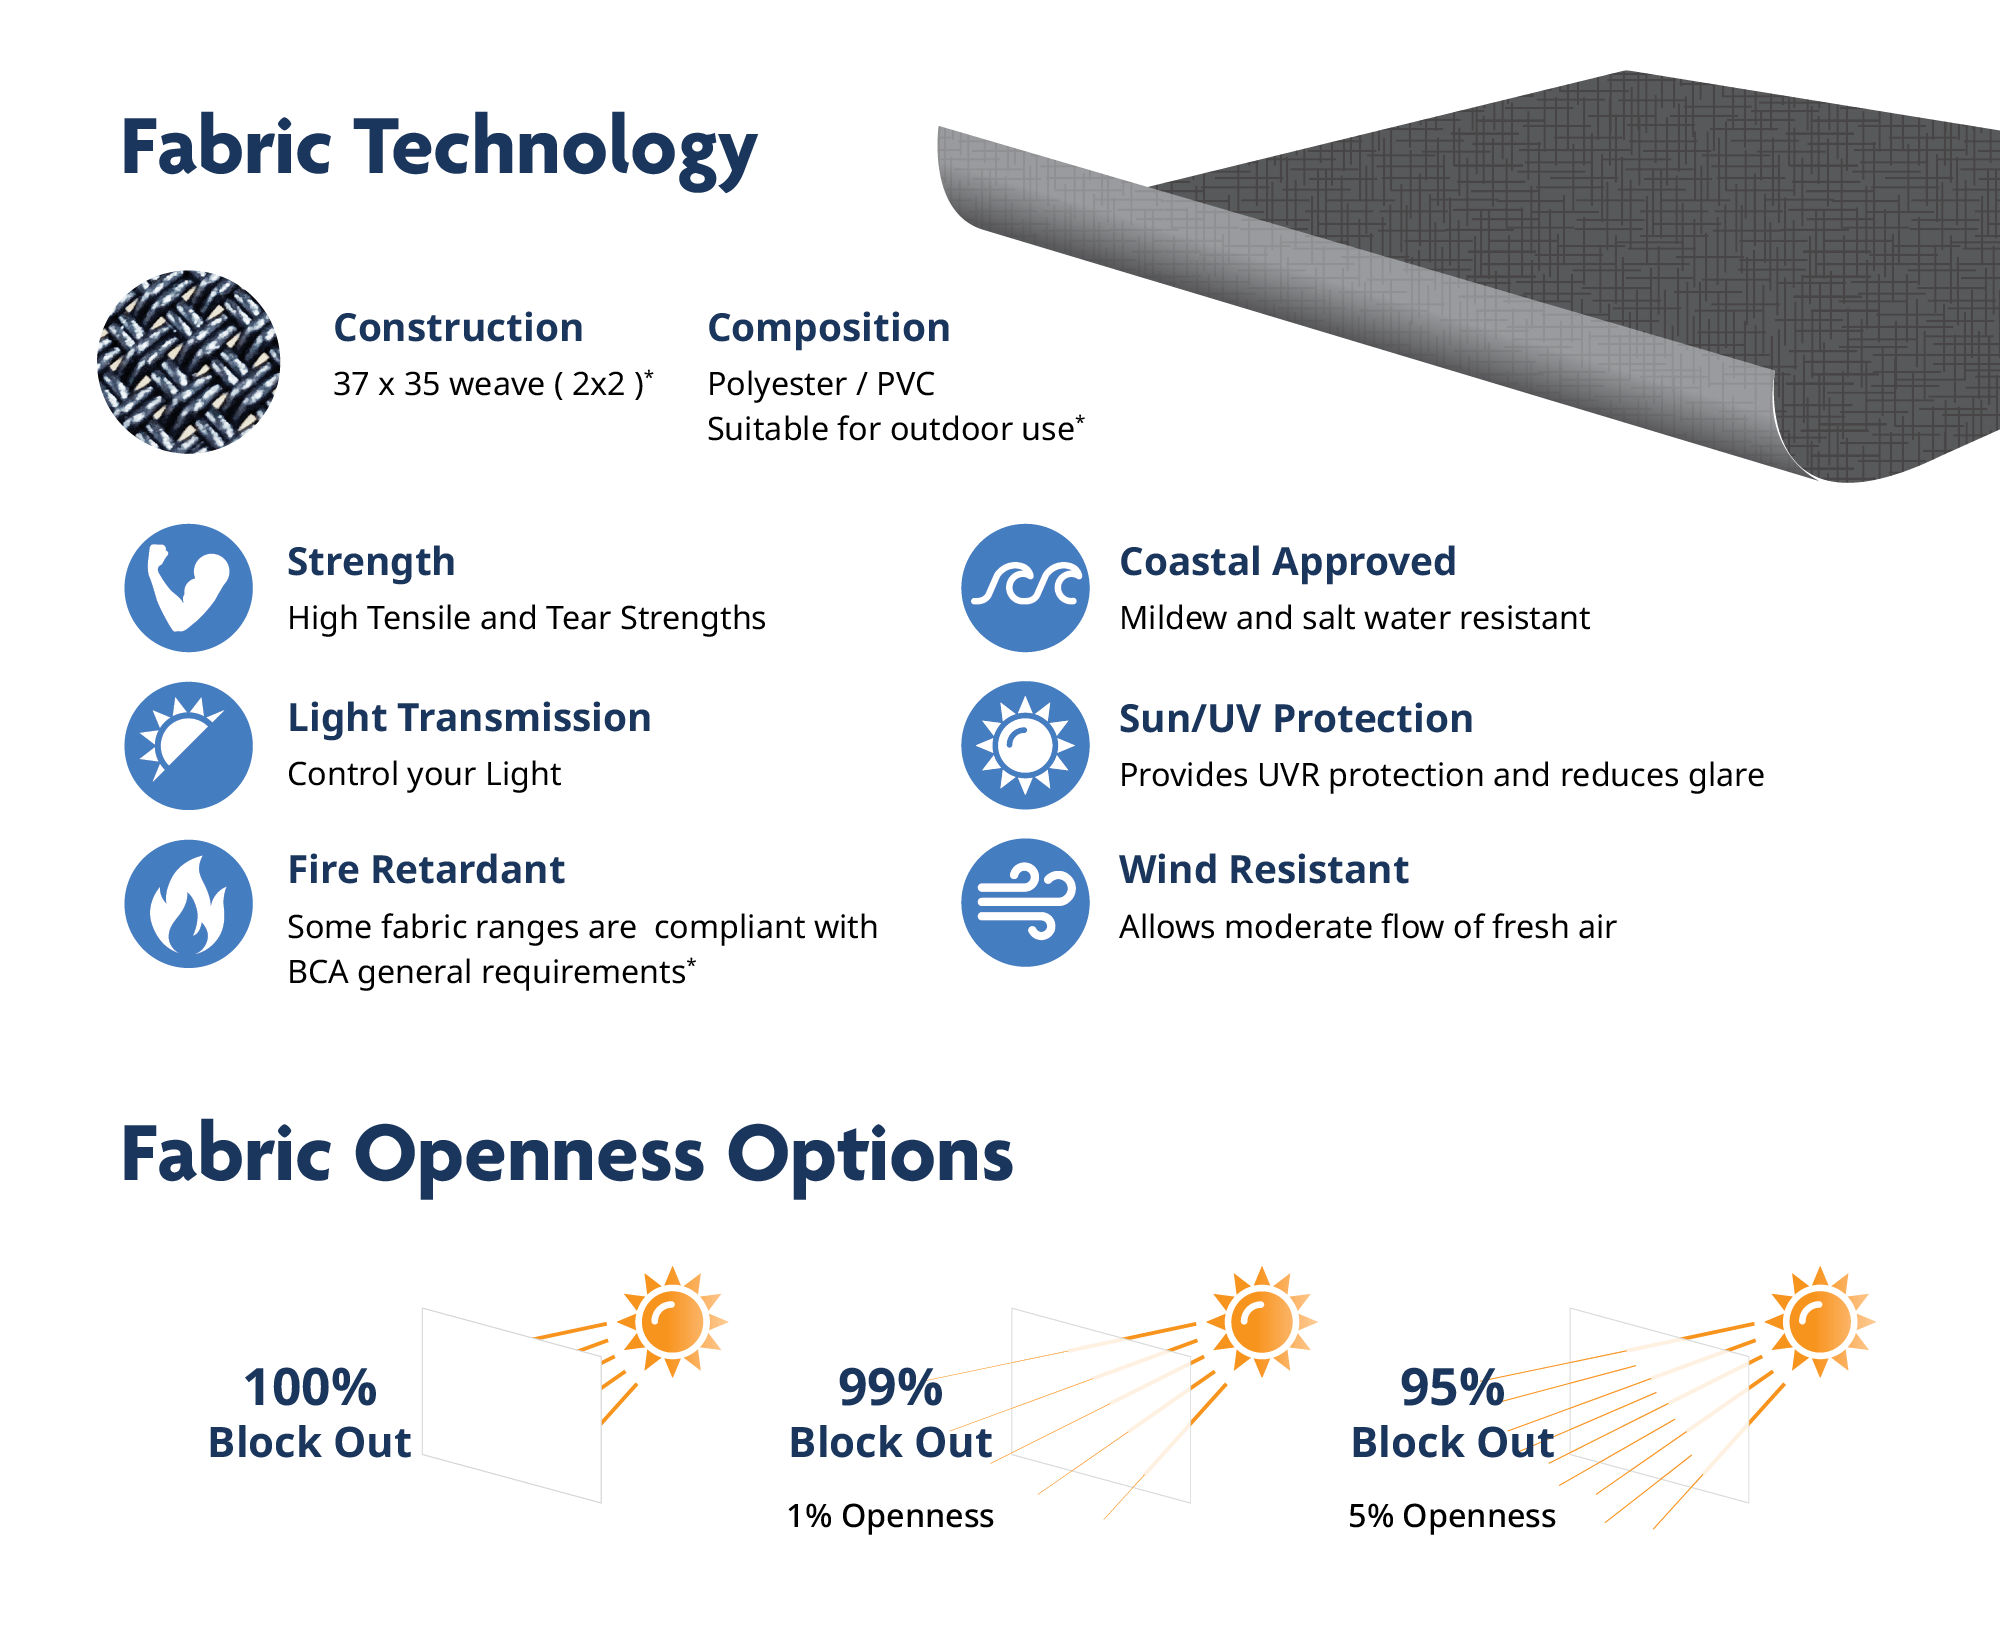 Fabric Technology